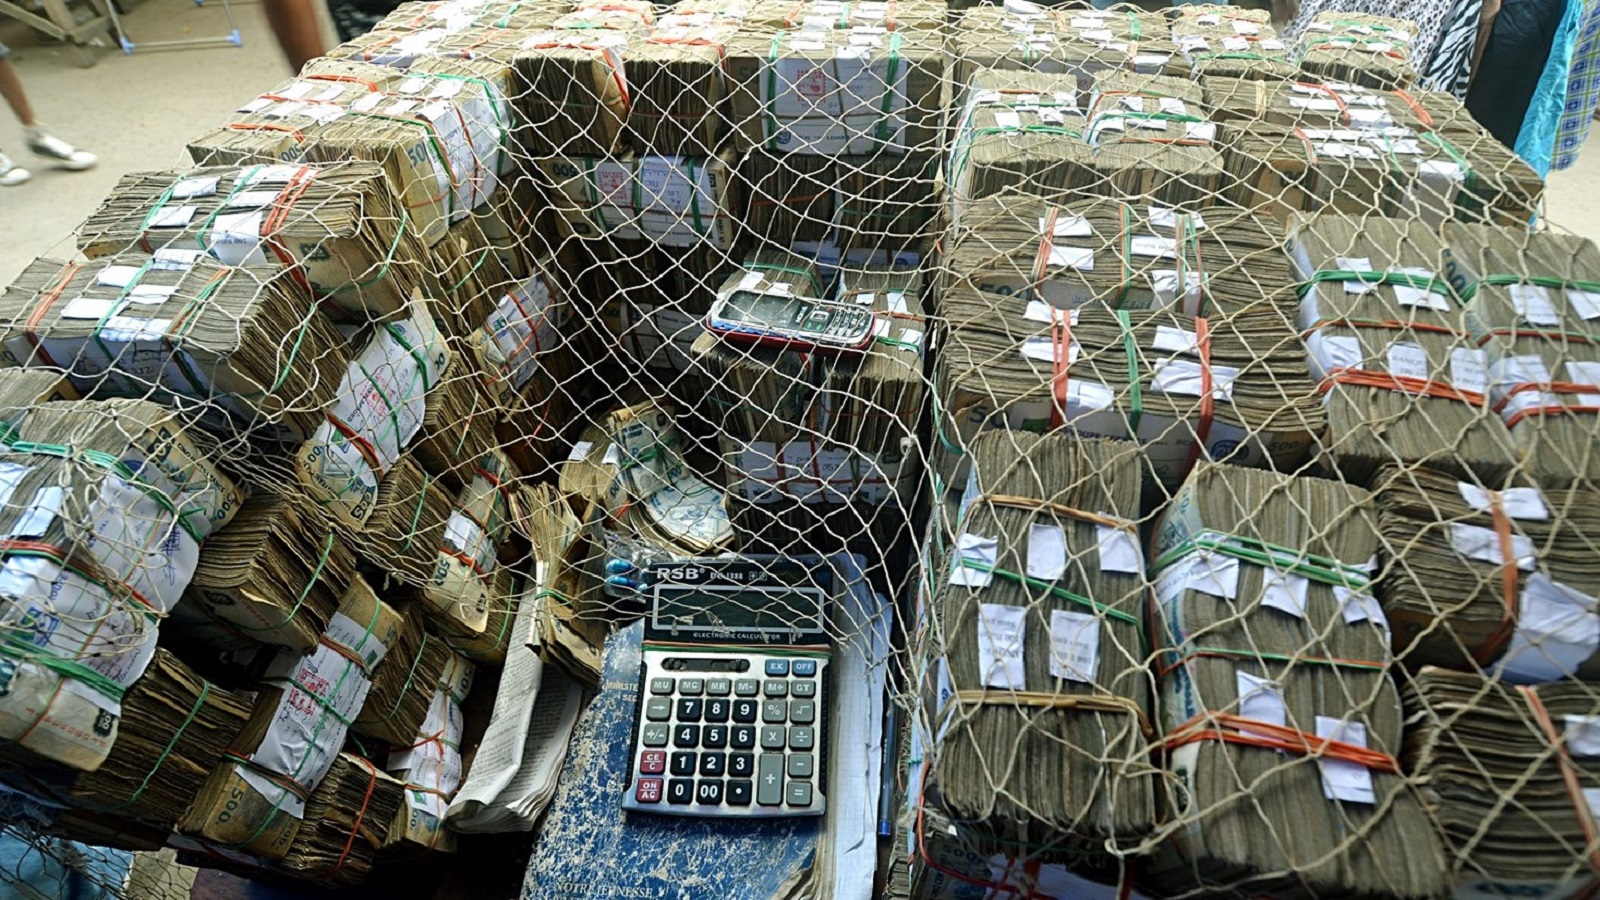 فضيحة "أفريلاند":إسرائيليون وممولو حزب الله في مصرف واحد